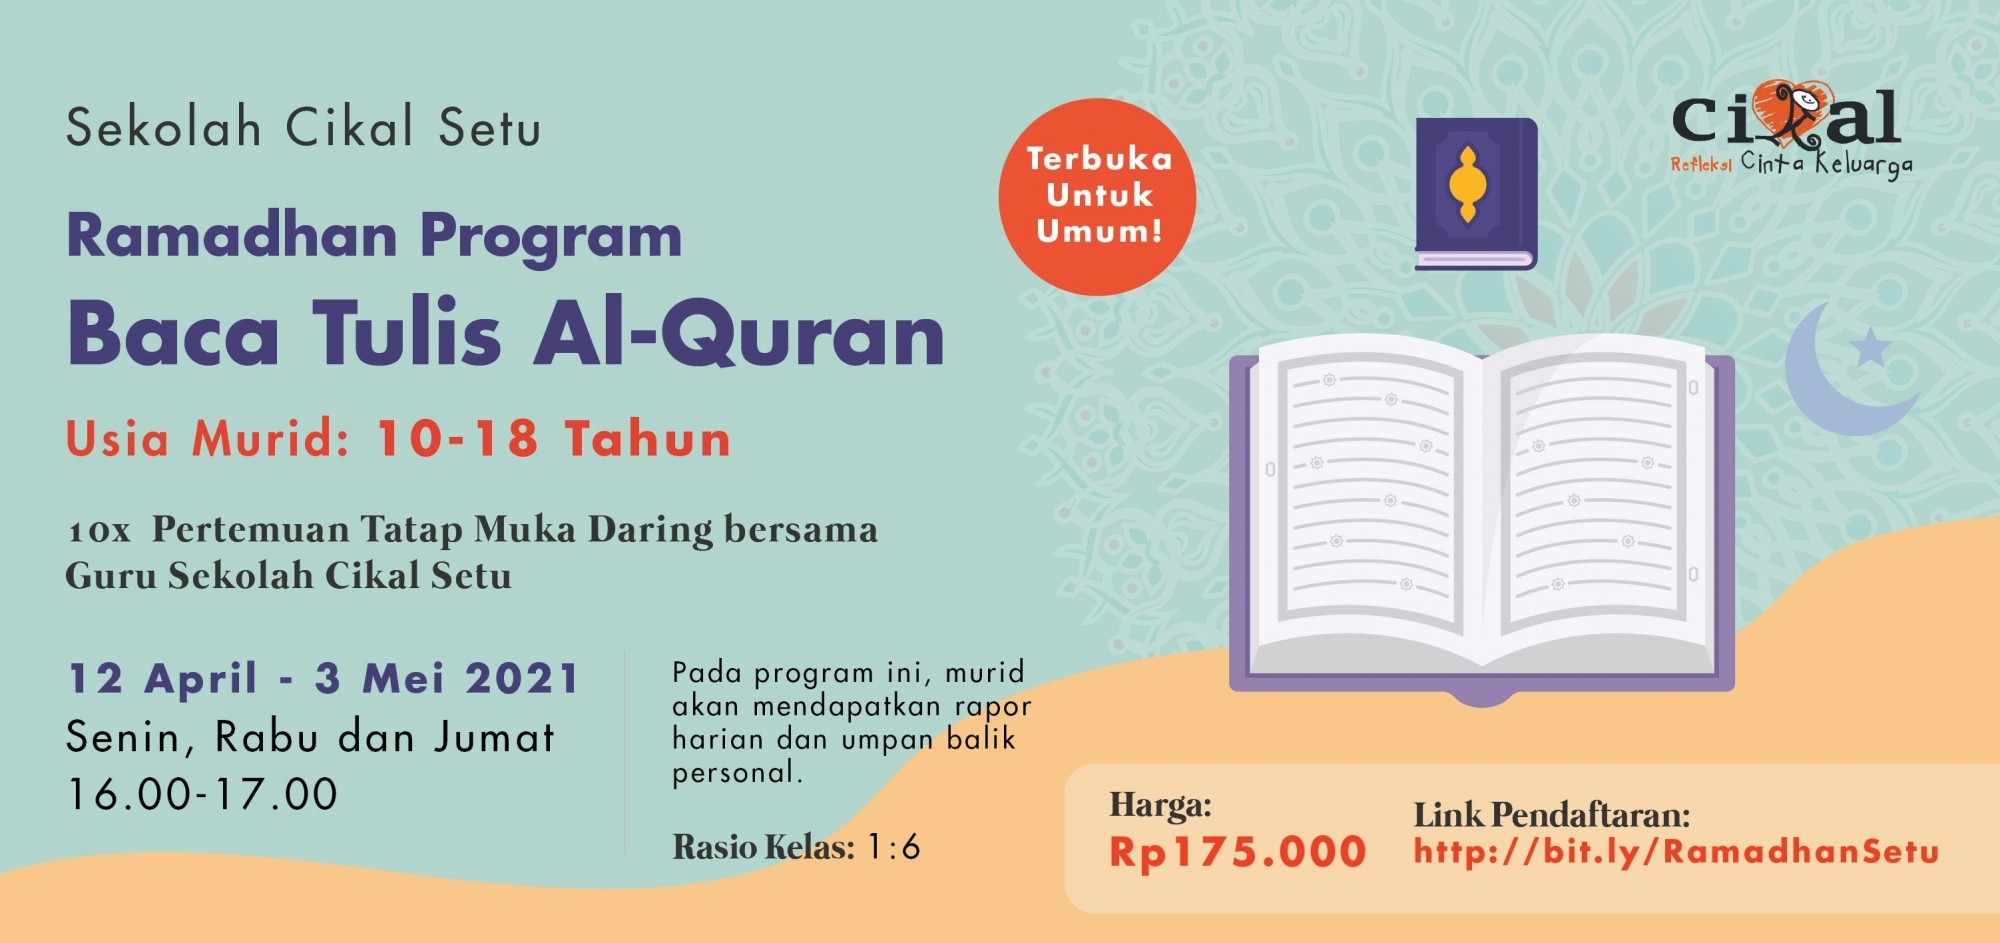 Ramadhan Program Baca Tulis Al-Quran Sekolah Cikal Setu (Untuk Umum)